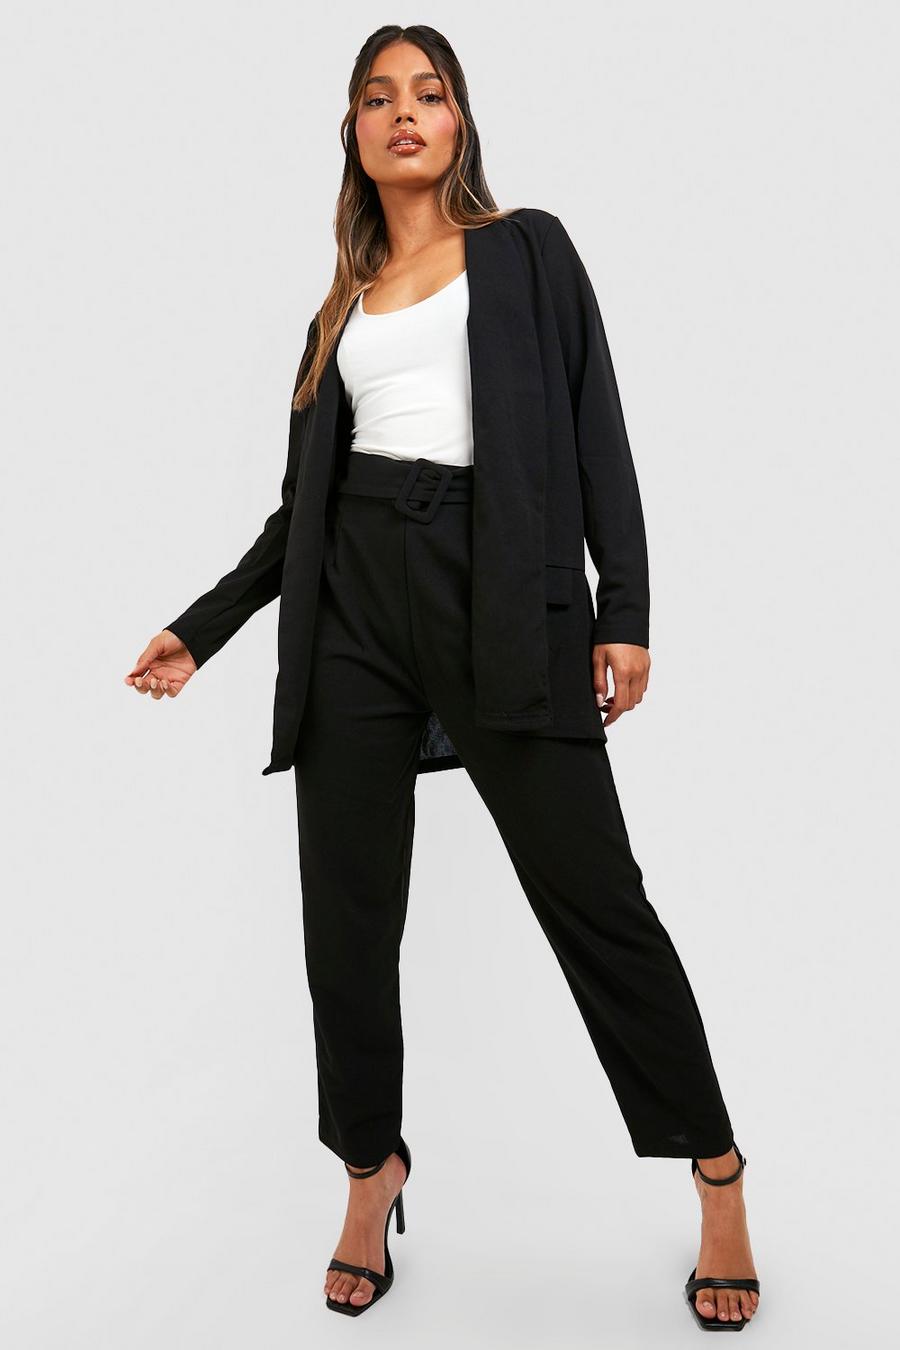 שחור negro סט חליפה בלייזר מחויט ומכנסיים עם חגורה מאותו הבד